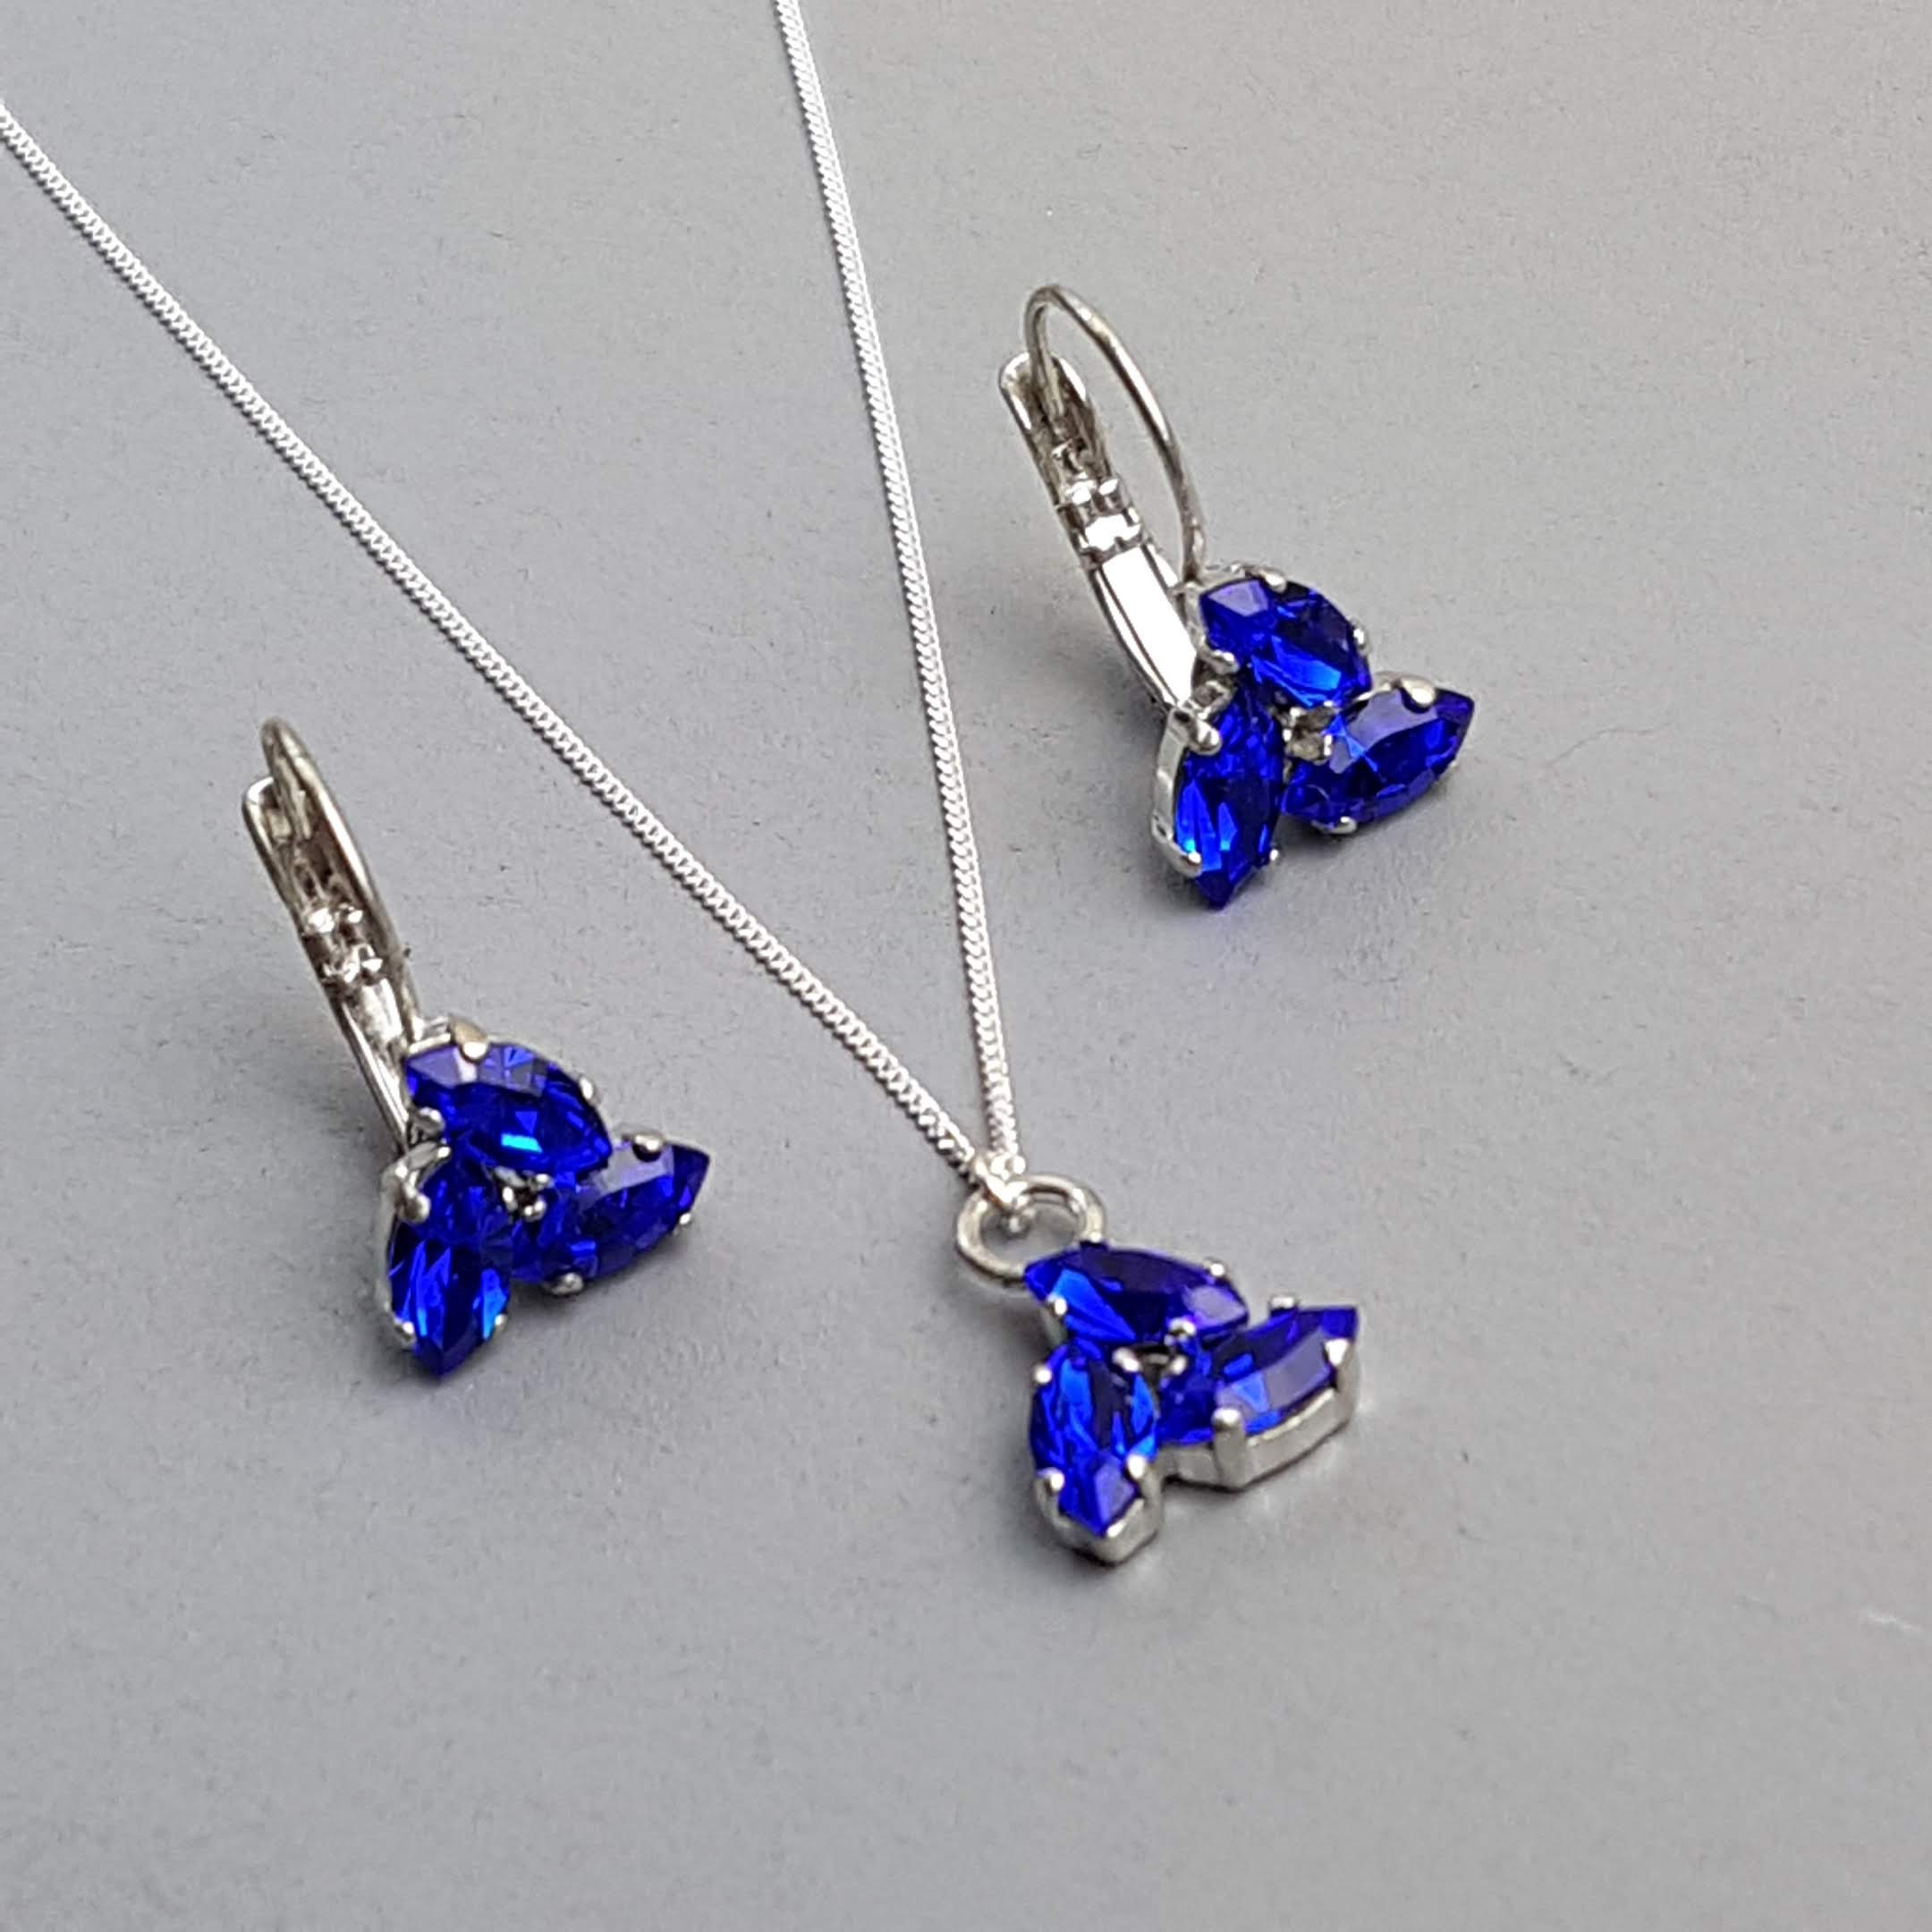 Blue Silver Crystal Flower Necklace Earrings Jewellery Set Stud Drop Ear Women 